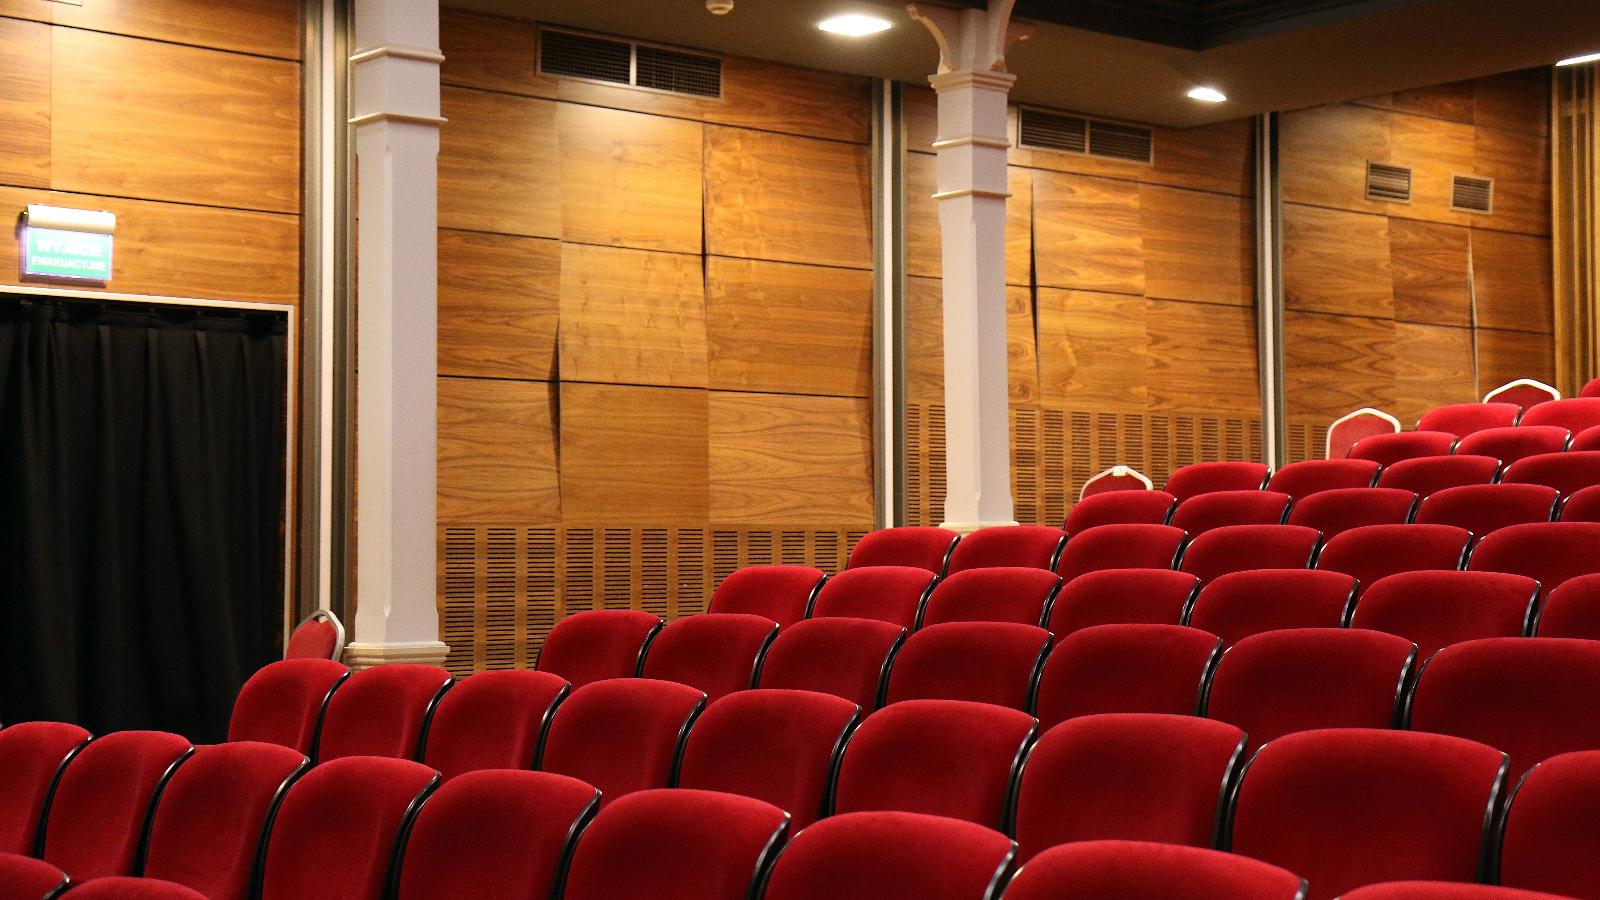 Teatro comunale di Argelato - foto generica via Pexels